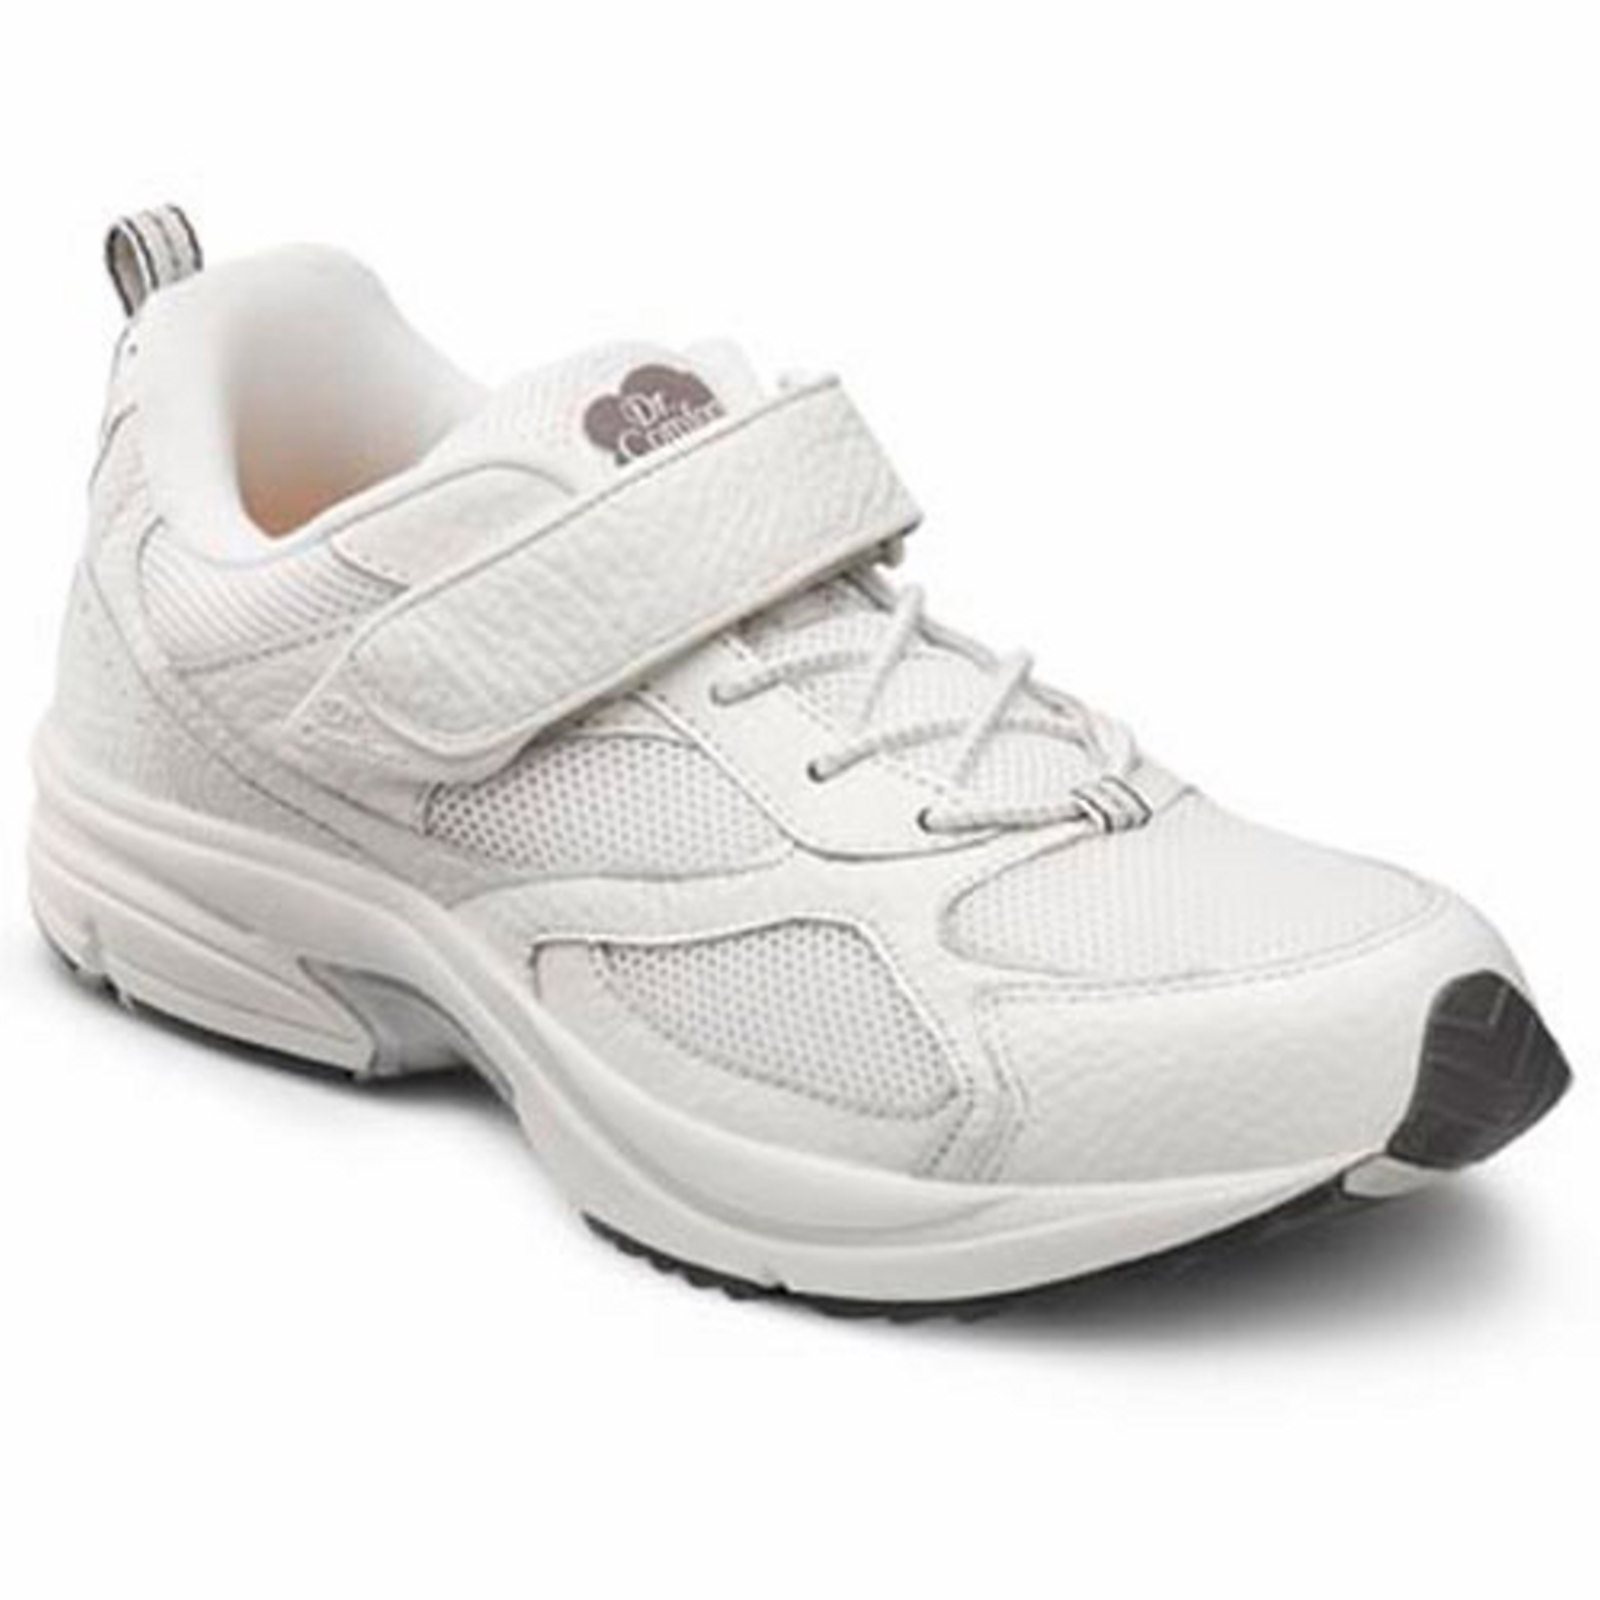 Dr. Comfort Endurance Men's Athletic Shoe: 9 Wide (E/2E) Black Elastic Lace w/Strap - image 2 of 5